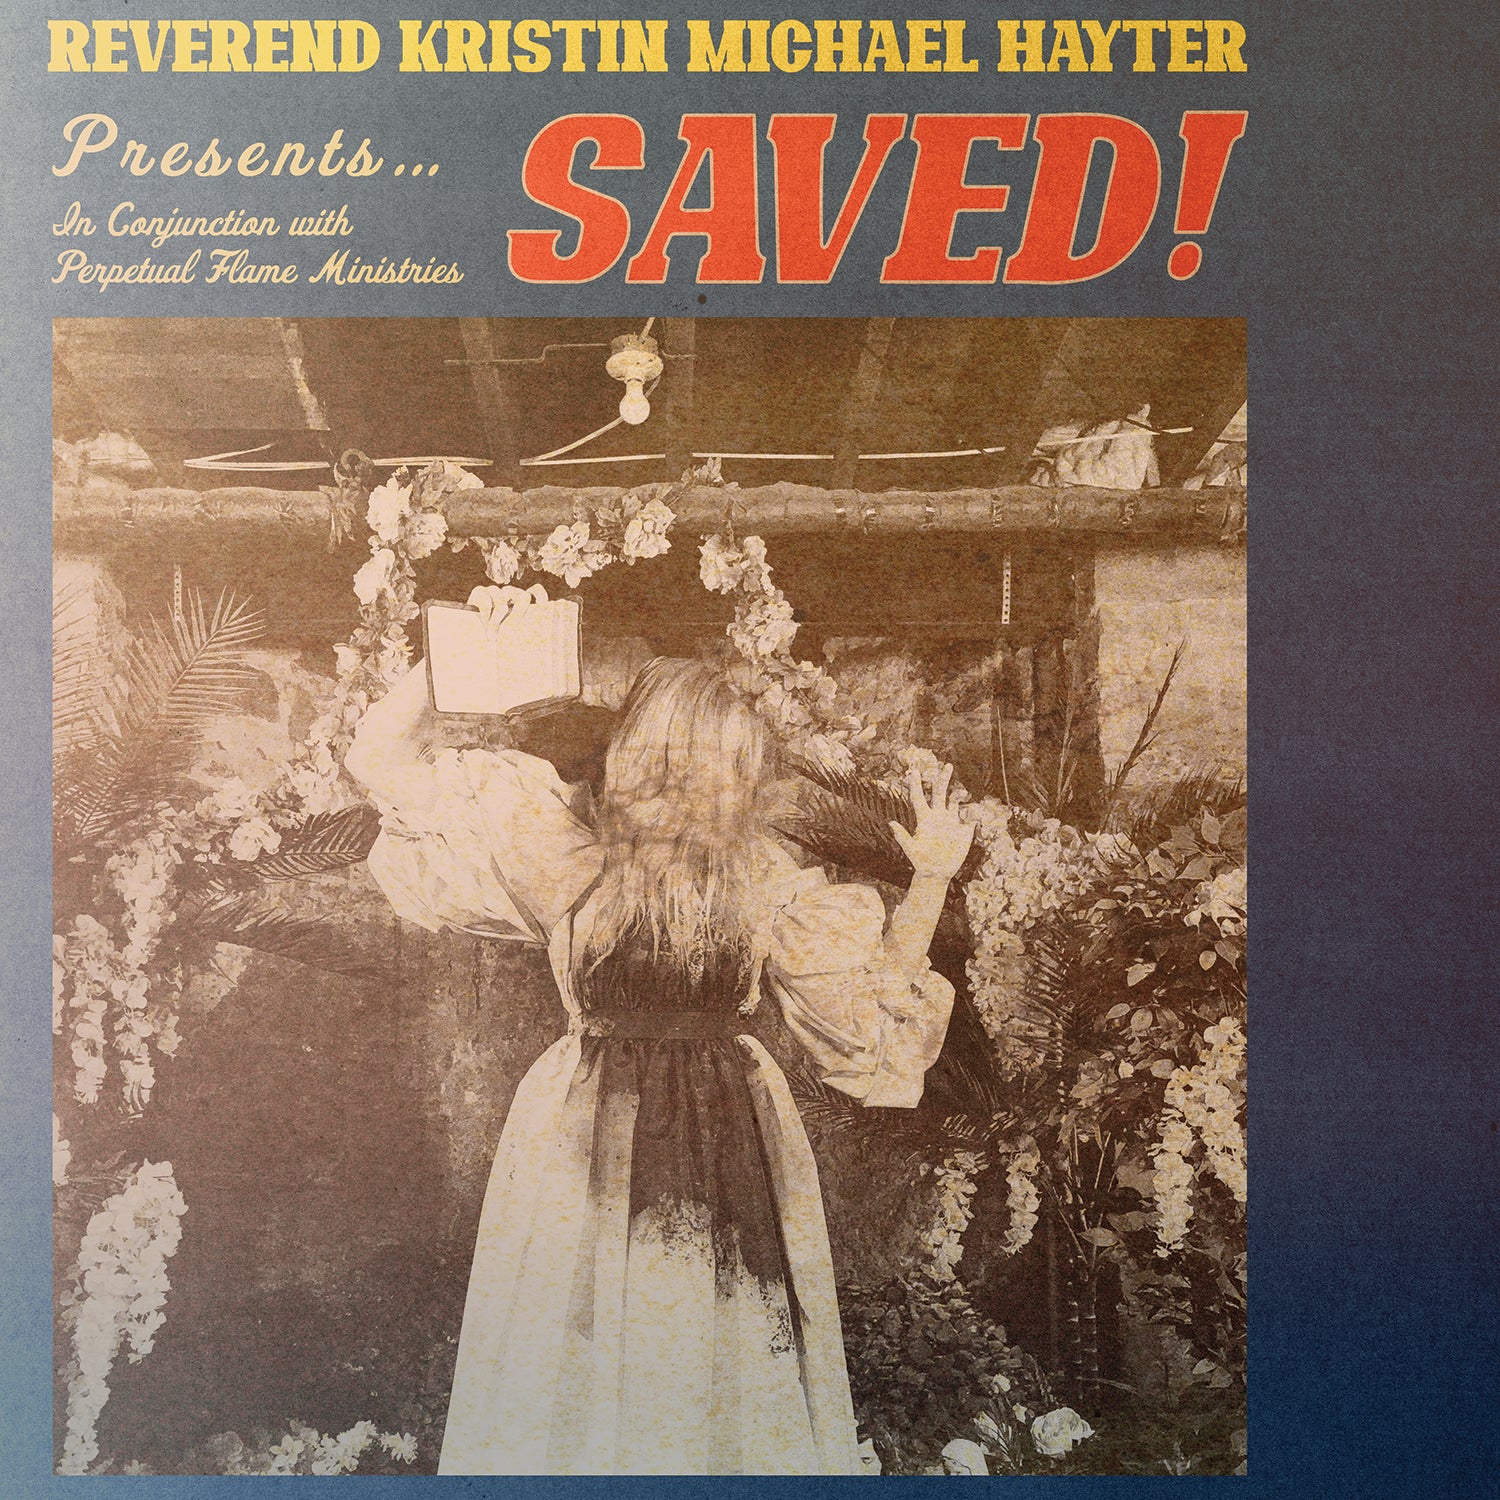 REVEREND KRISTIN MICHAEL HAYTER "Saved!" CD